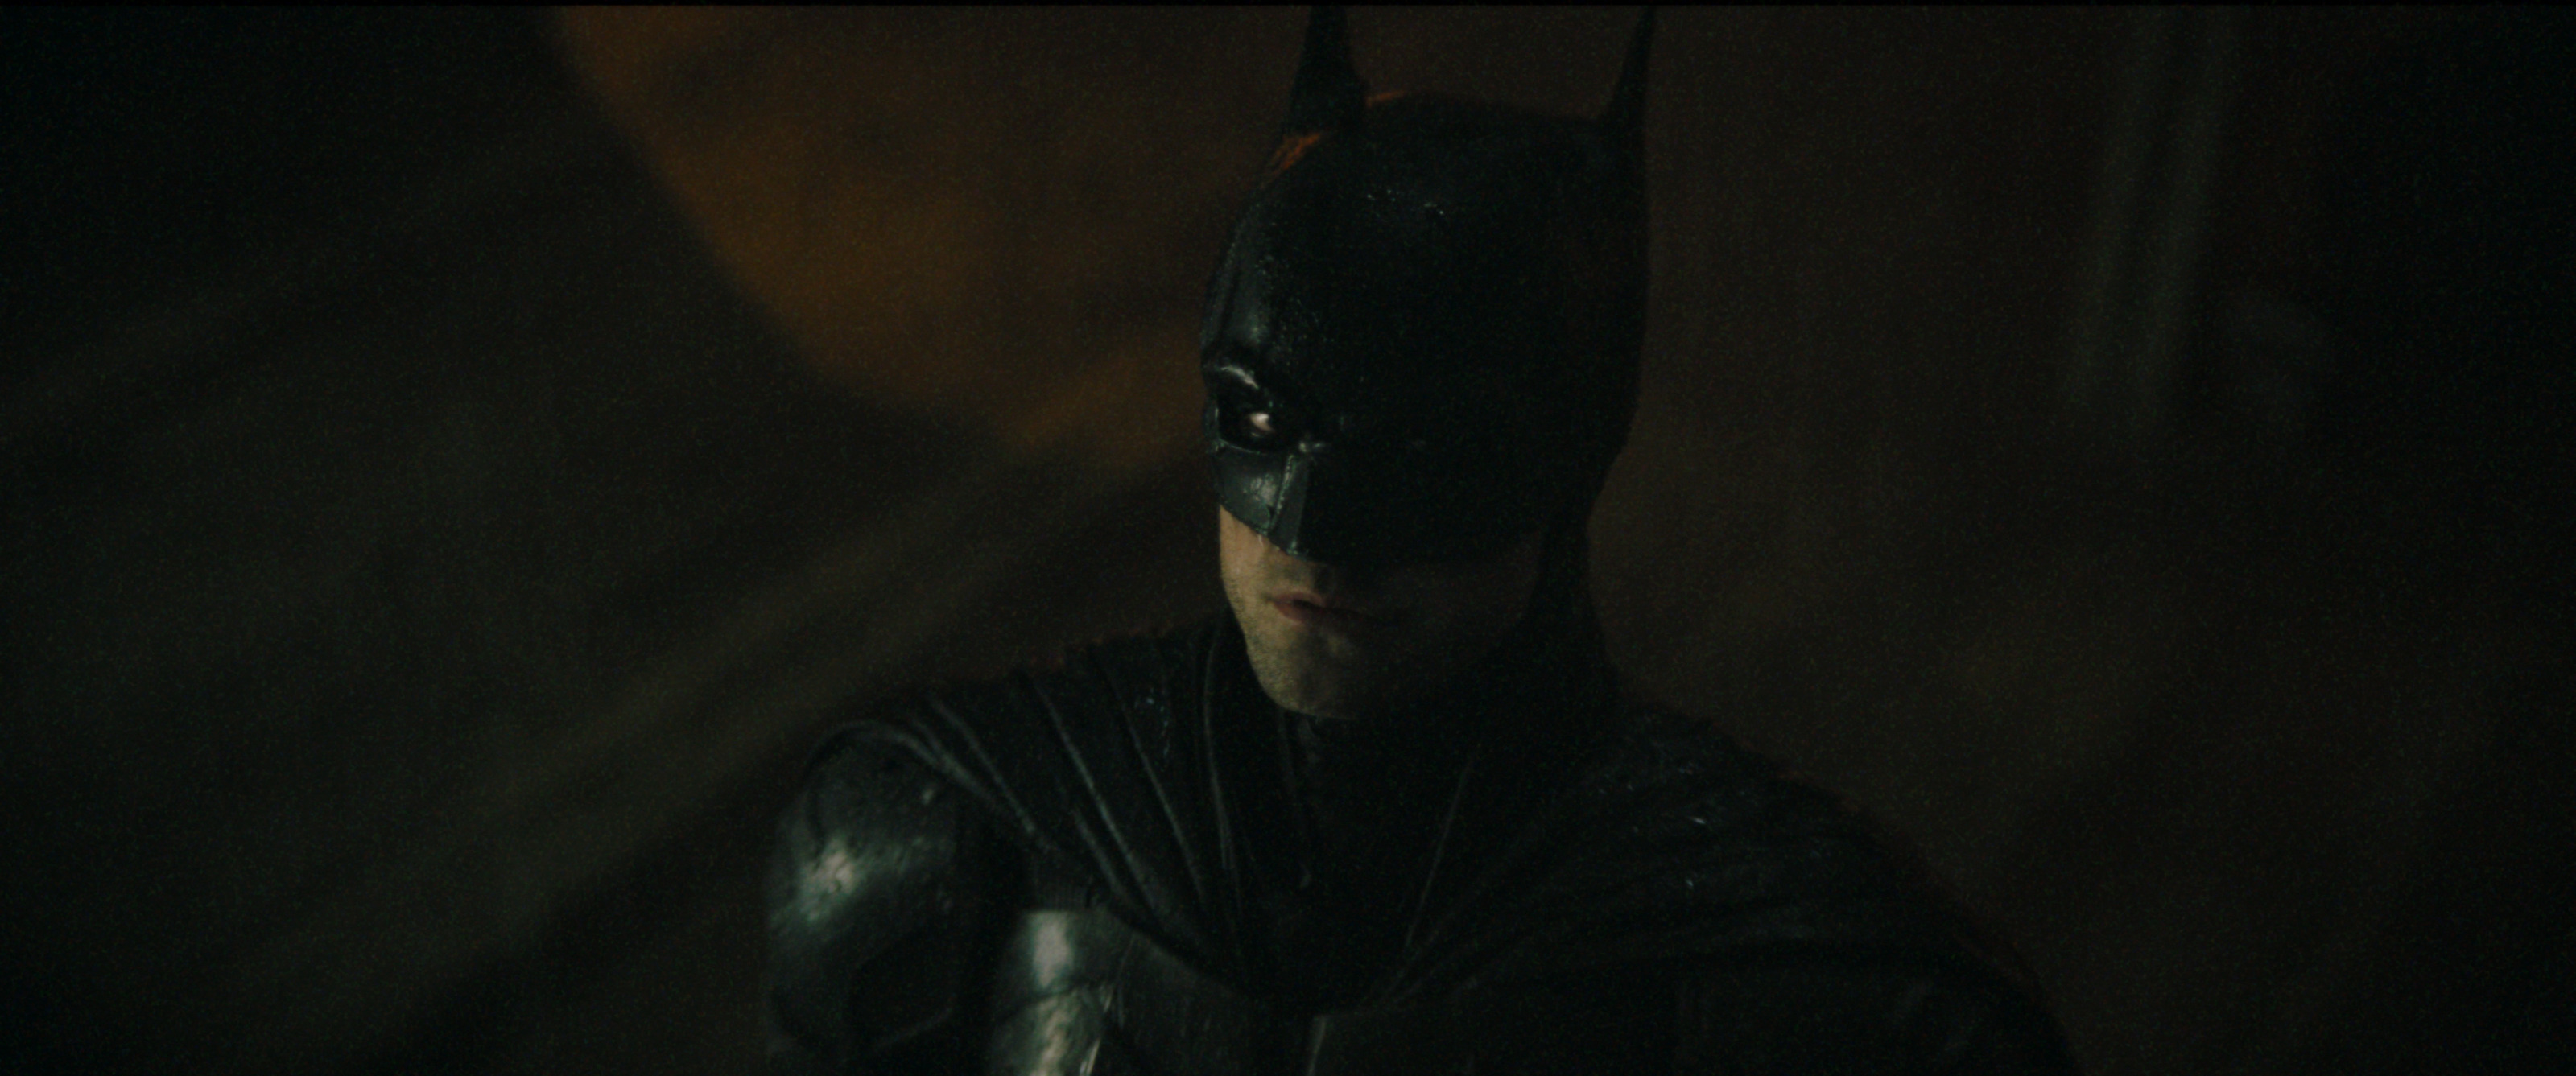 Batman: Arkham Knight review: The Batman's final chapter - CNET